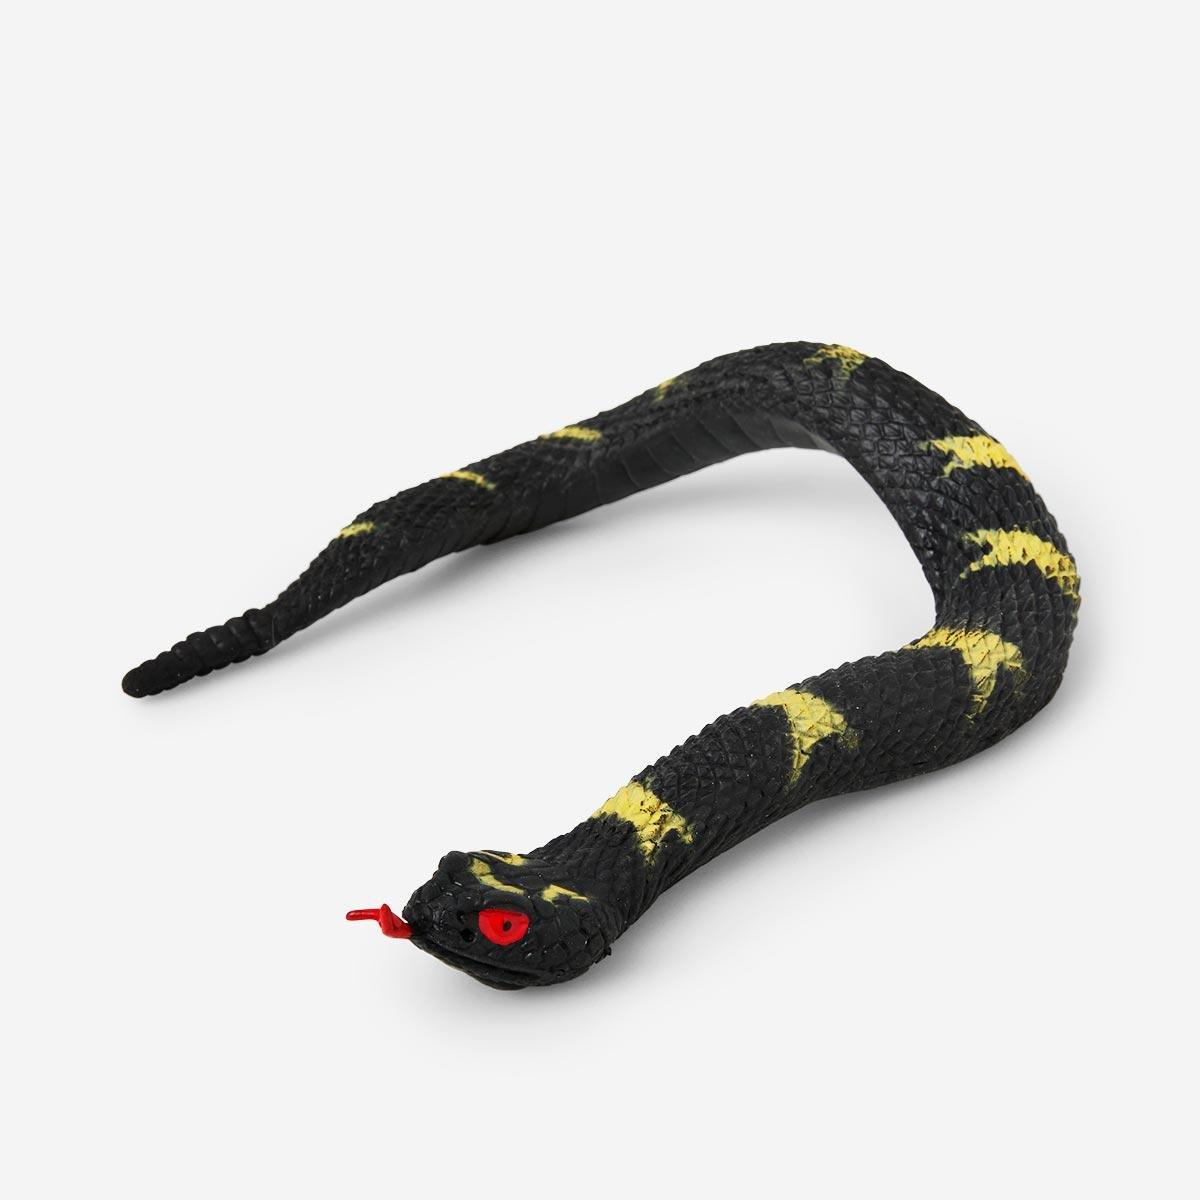 Stretchy snake animal